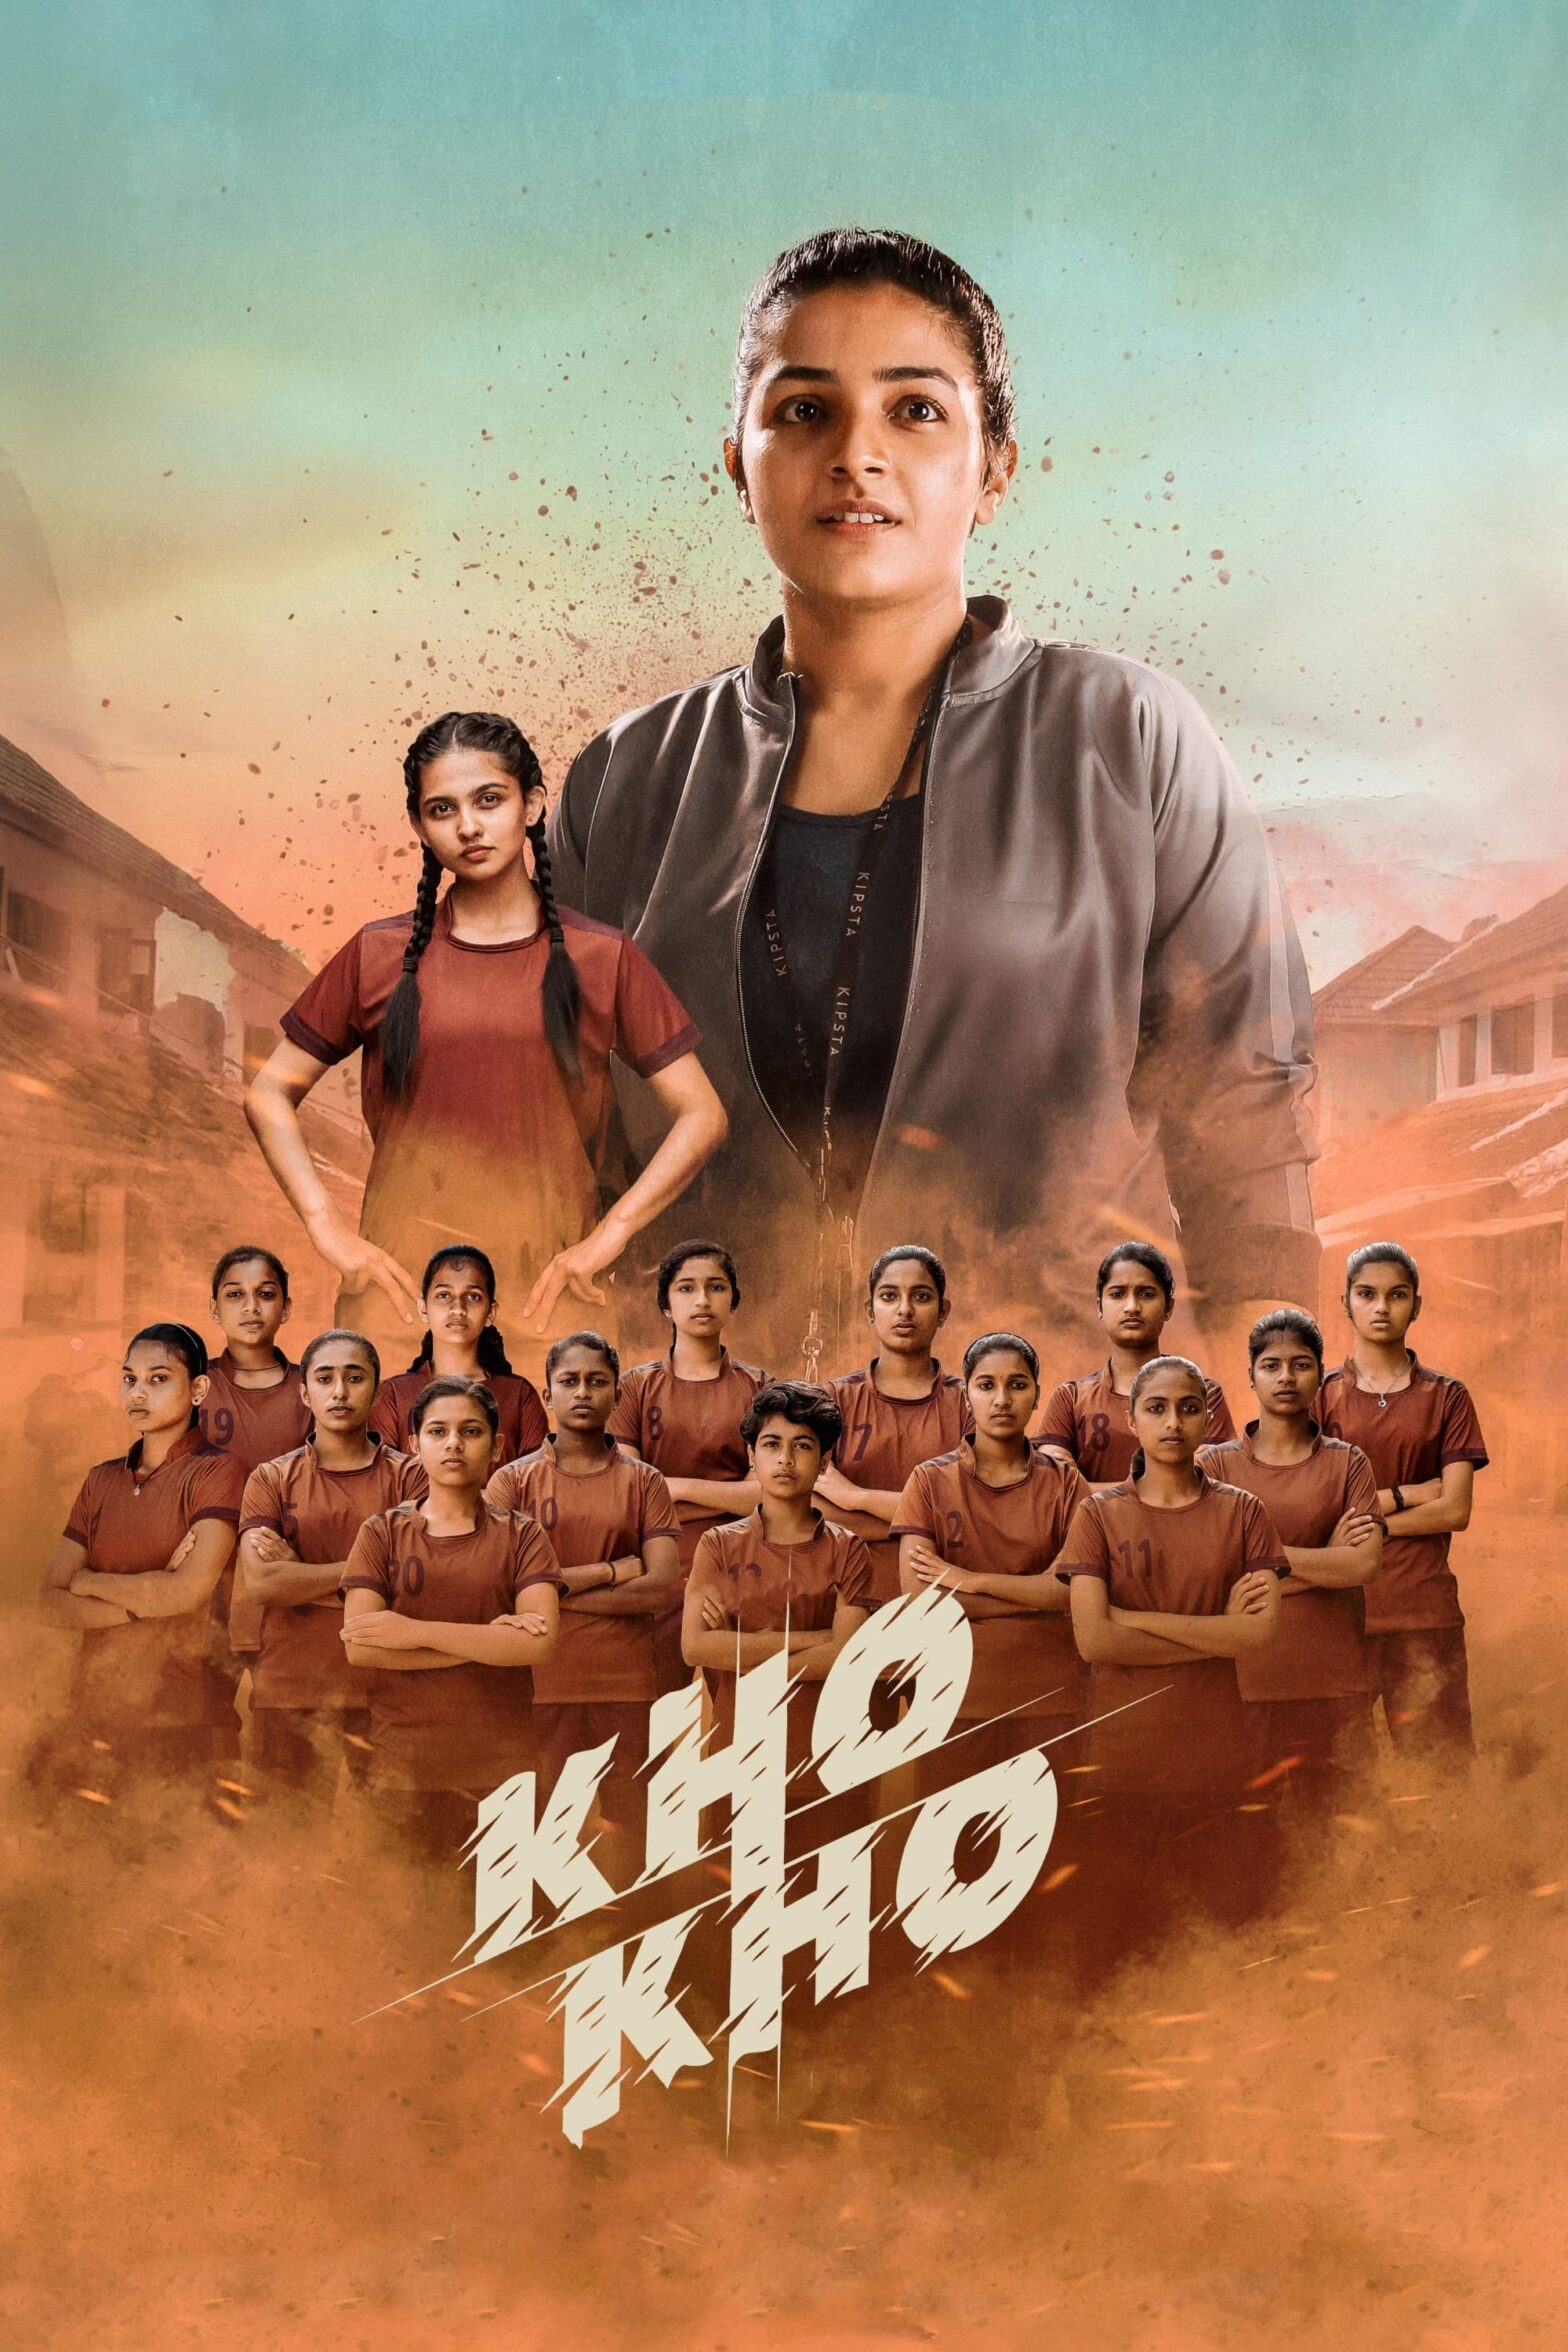 Poster for the movie "Kho Kho"